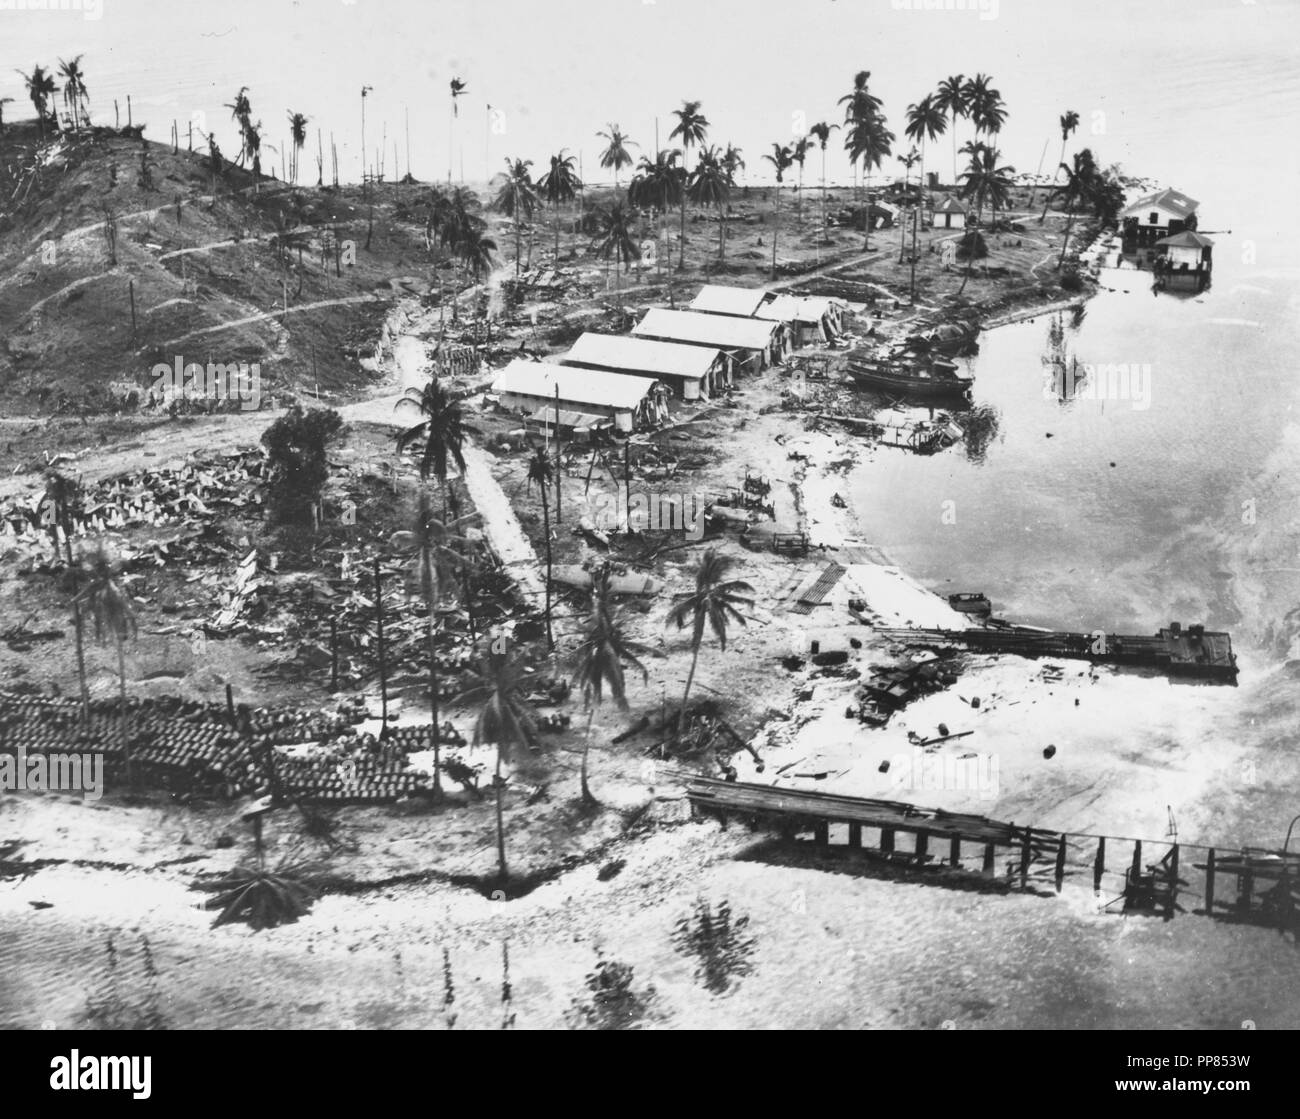 Guadalcanal-Tulagi les débarquements, 7-9 août 1942. Équipements en Chambre fait naufrage et d'aéronefs à l'hydrobase japonaise sur l'île de Tanambogo, à l'est de Tulagi. Photo est datée du 8 août 1942 et a probablement été prise peu de temps avant que les Marines américains capturés l'île. Ce point de vue ressemble à propos de l'ouest, avec une jetée dans l'avant-plan, les barils de combustible empilés à la gauche et l'épave d'un hydravion parmi les arbres au centre. Les bâtiments sont probablement plus à gauche de l'île de ses jours comme un Royal Australian Air Force facility. Banque D'Images